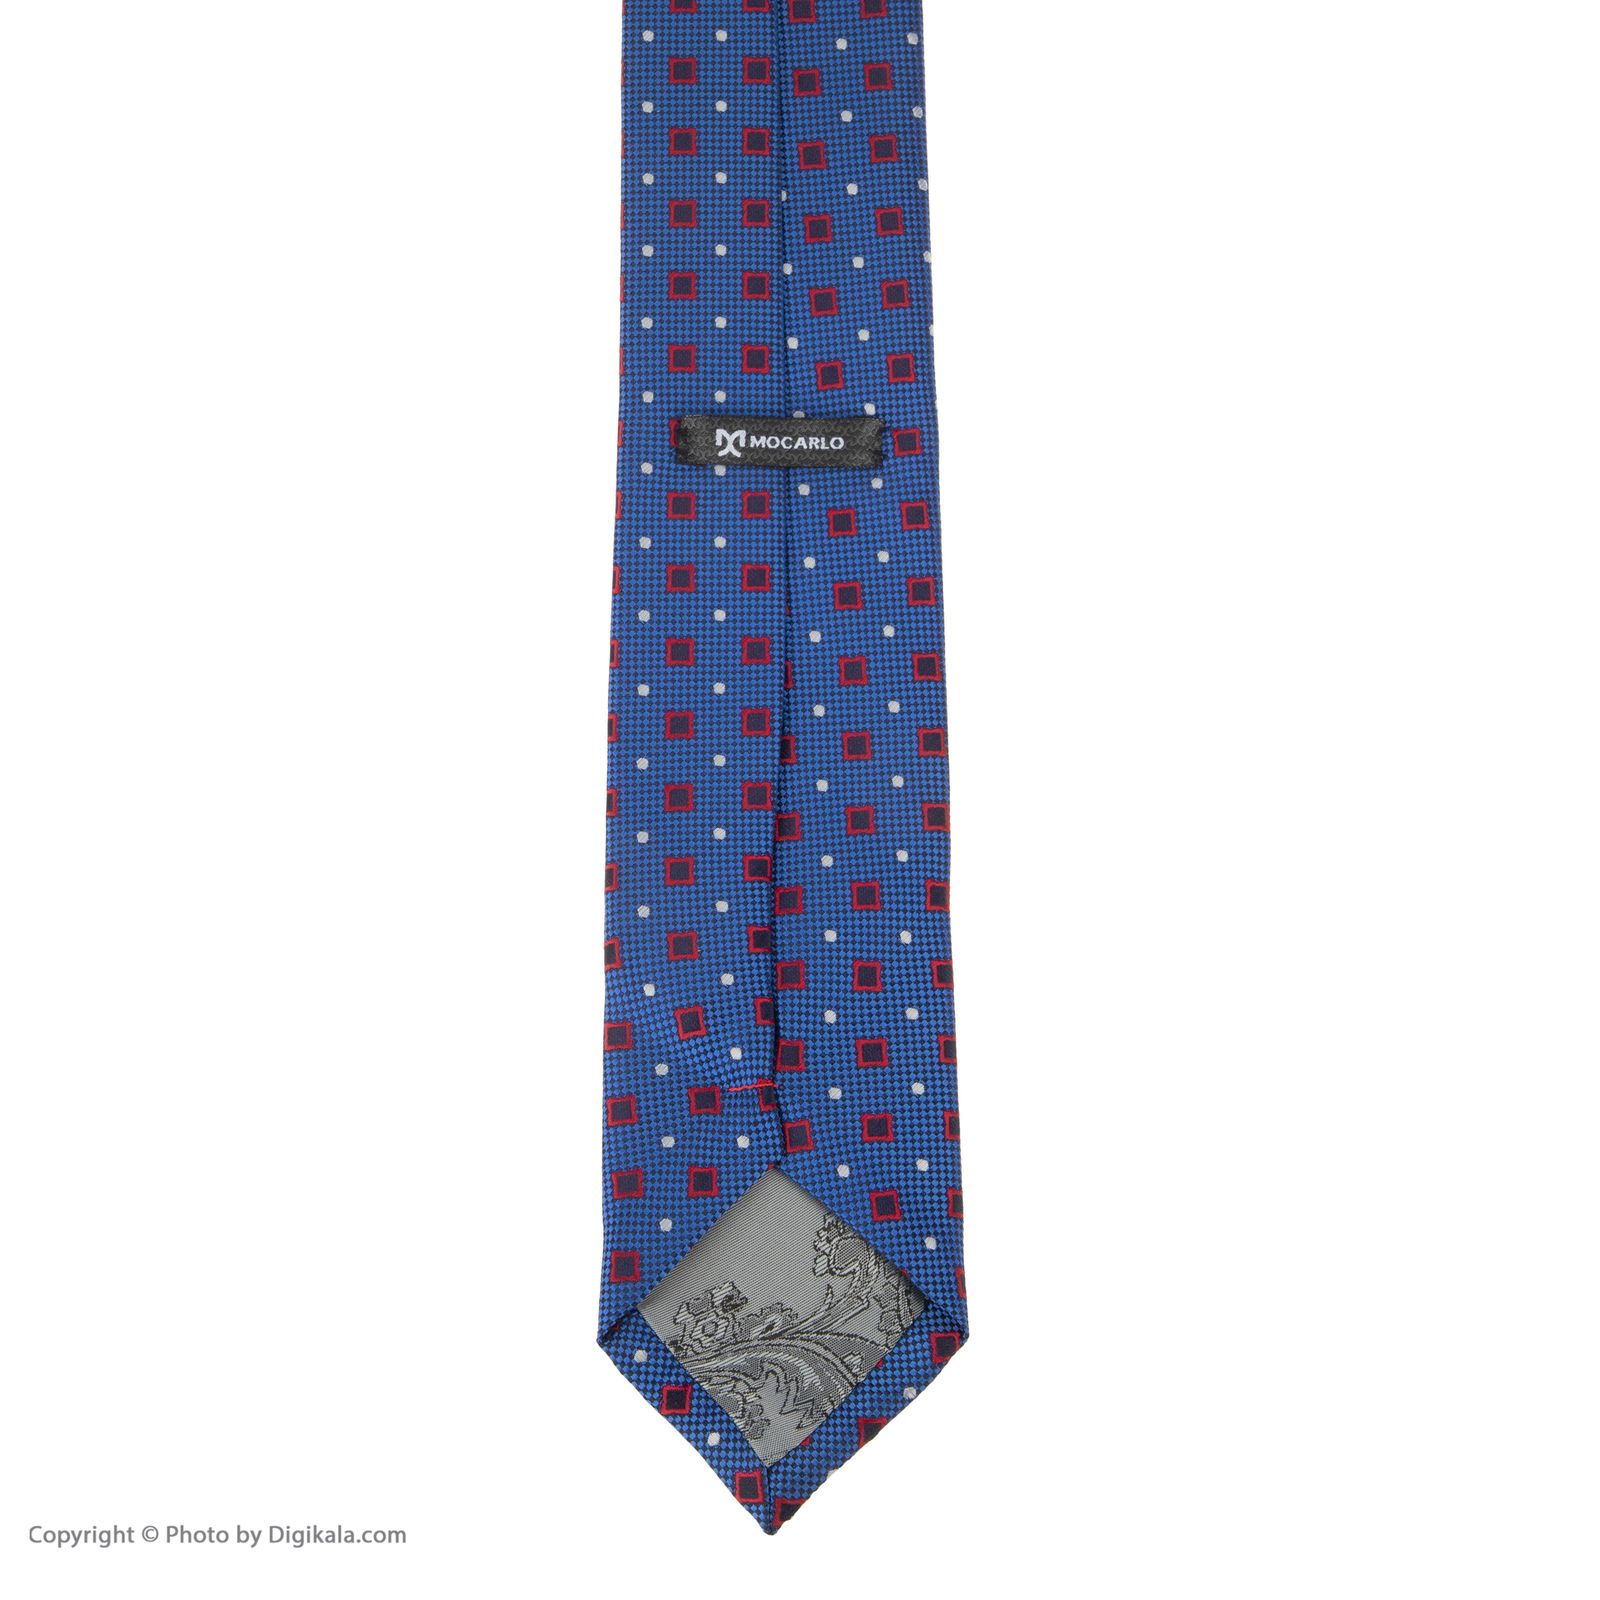 ست کراوات و دستمال جیب و دکمه سردست مردانه موکارلو کد 1 -  - 9